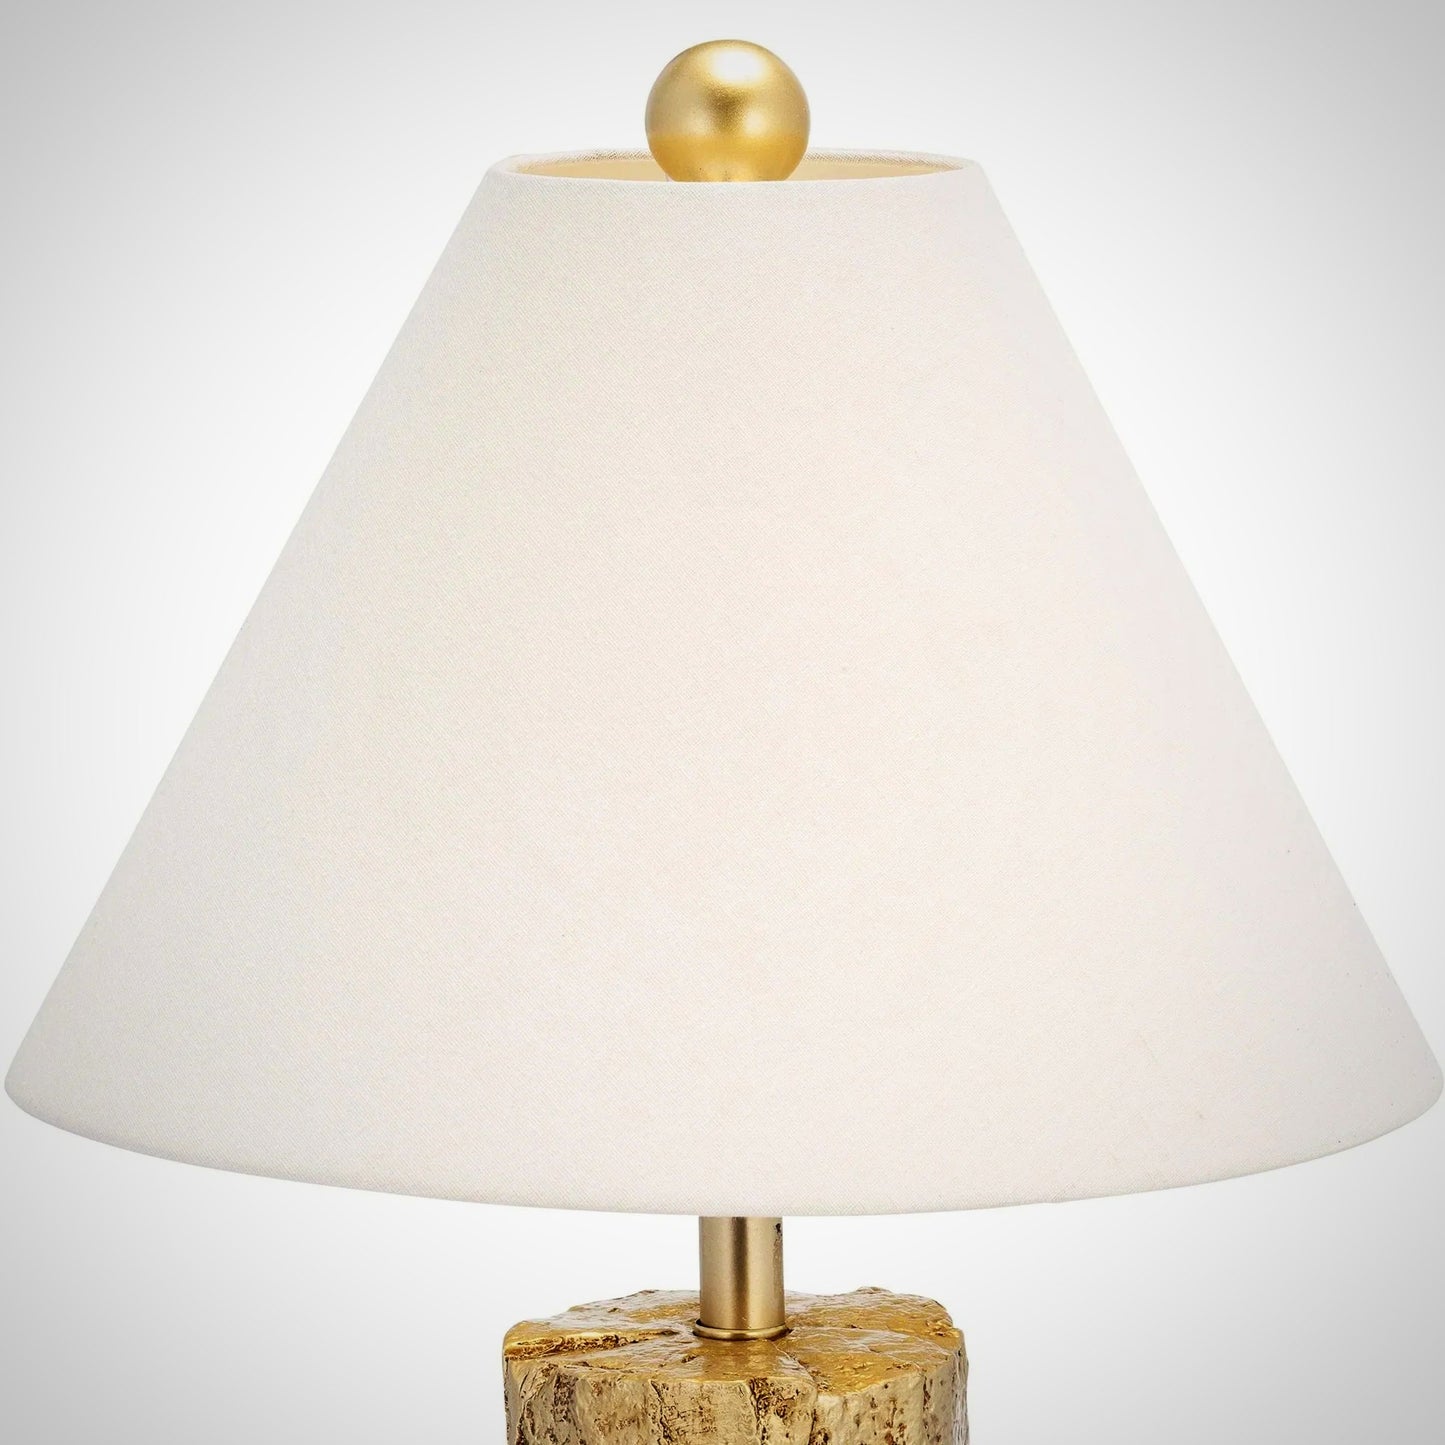 Resony Lamp